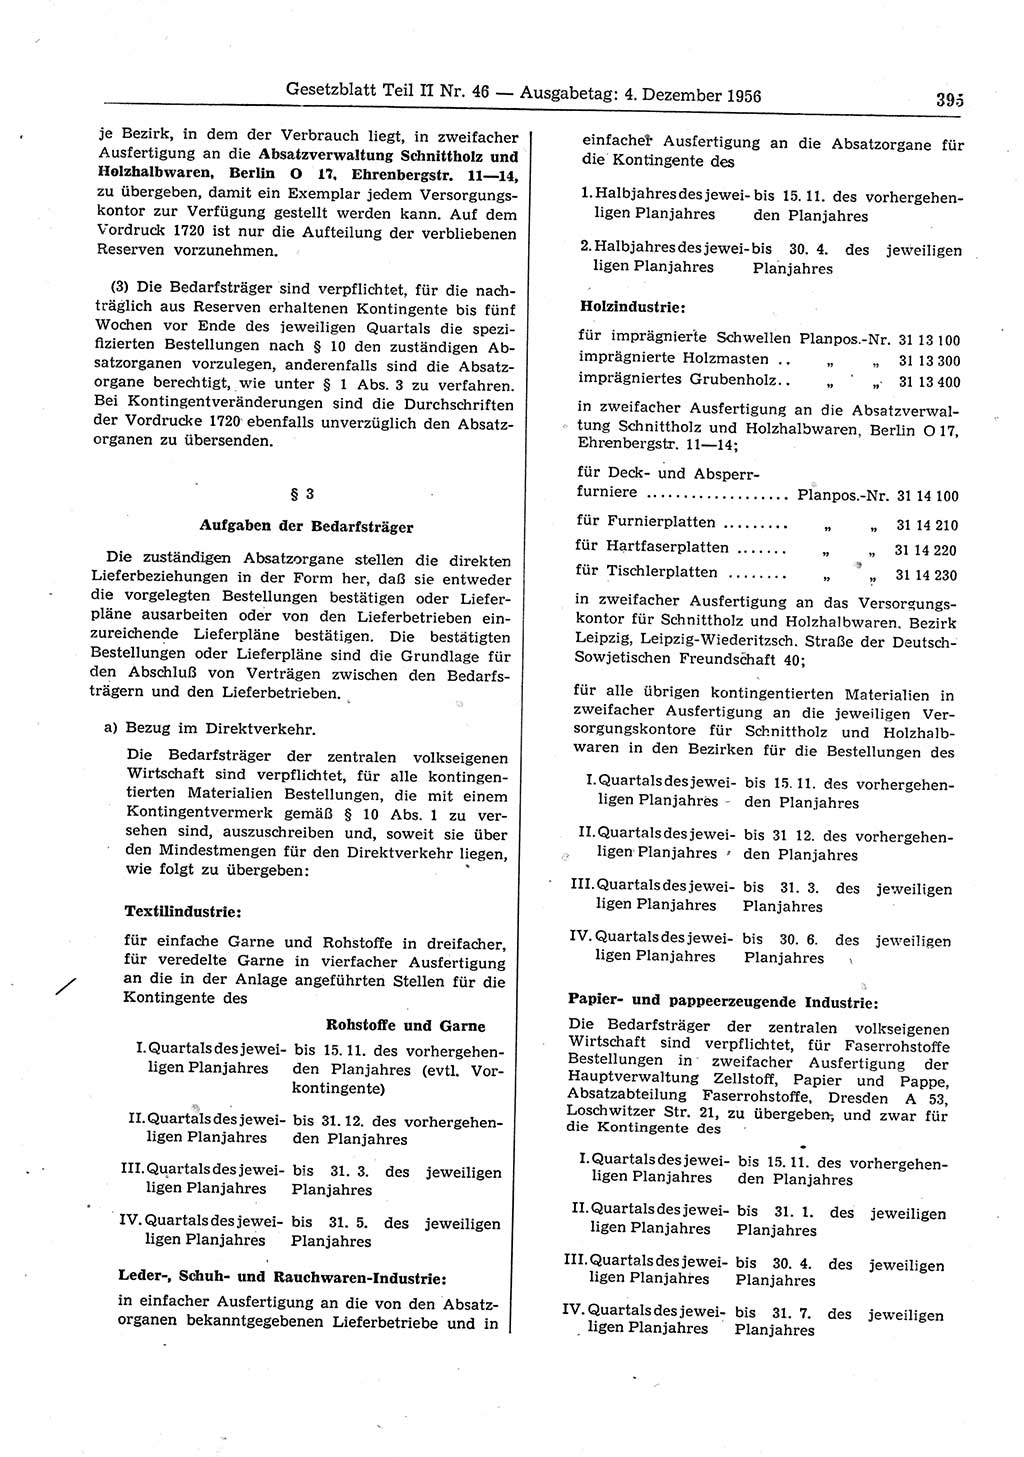 Gesetzblatt (GBl.) der Deutschen Demokratischen Republik (DDR) Teil ⅠⅠ 1956, Seite 395 (GBl. DDR ⅠⅠ 1956, S. 395)